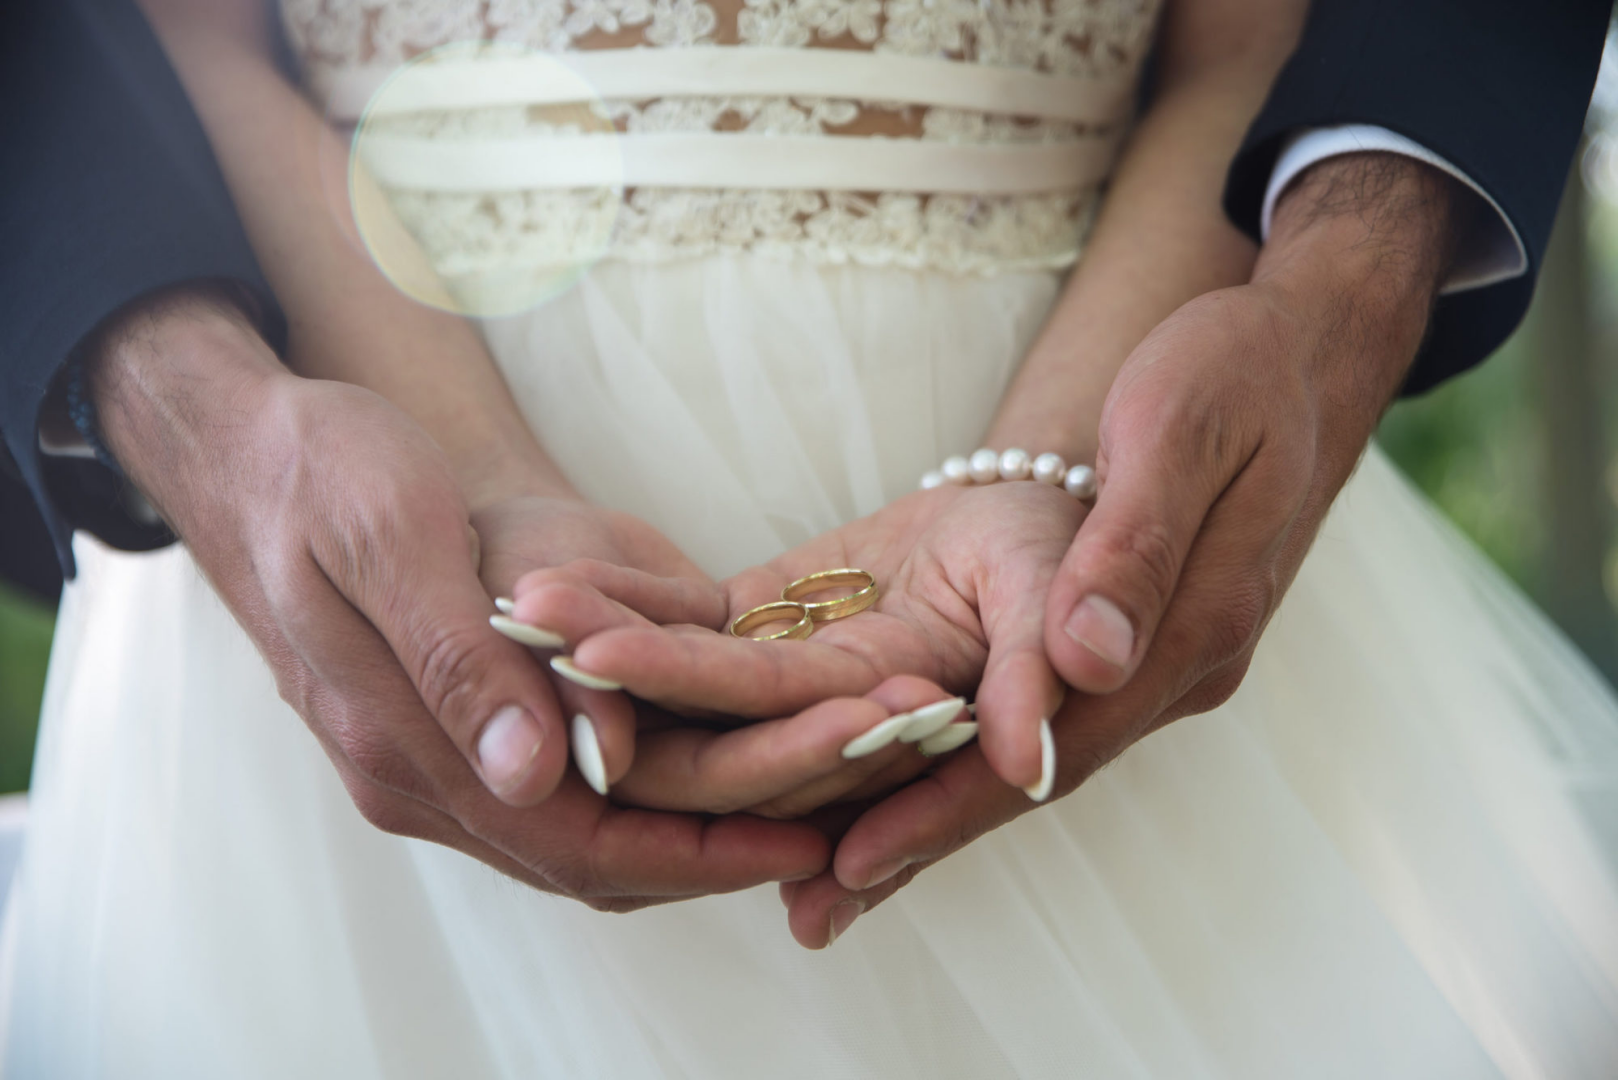 Брак. Обручальные кольца на руках жениха и невесты. Свадьба руки с кольцами. Фото обручальных колец на руках жениха и невесты. Открытый брак б